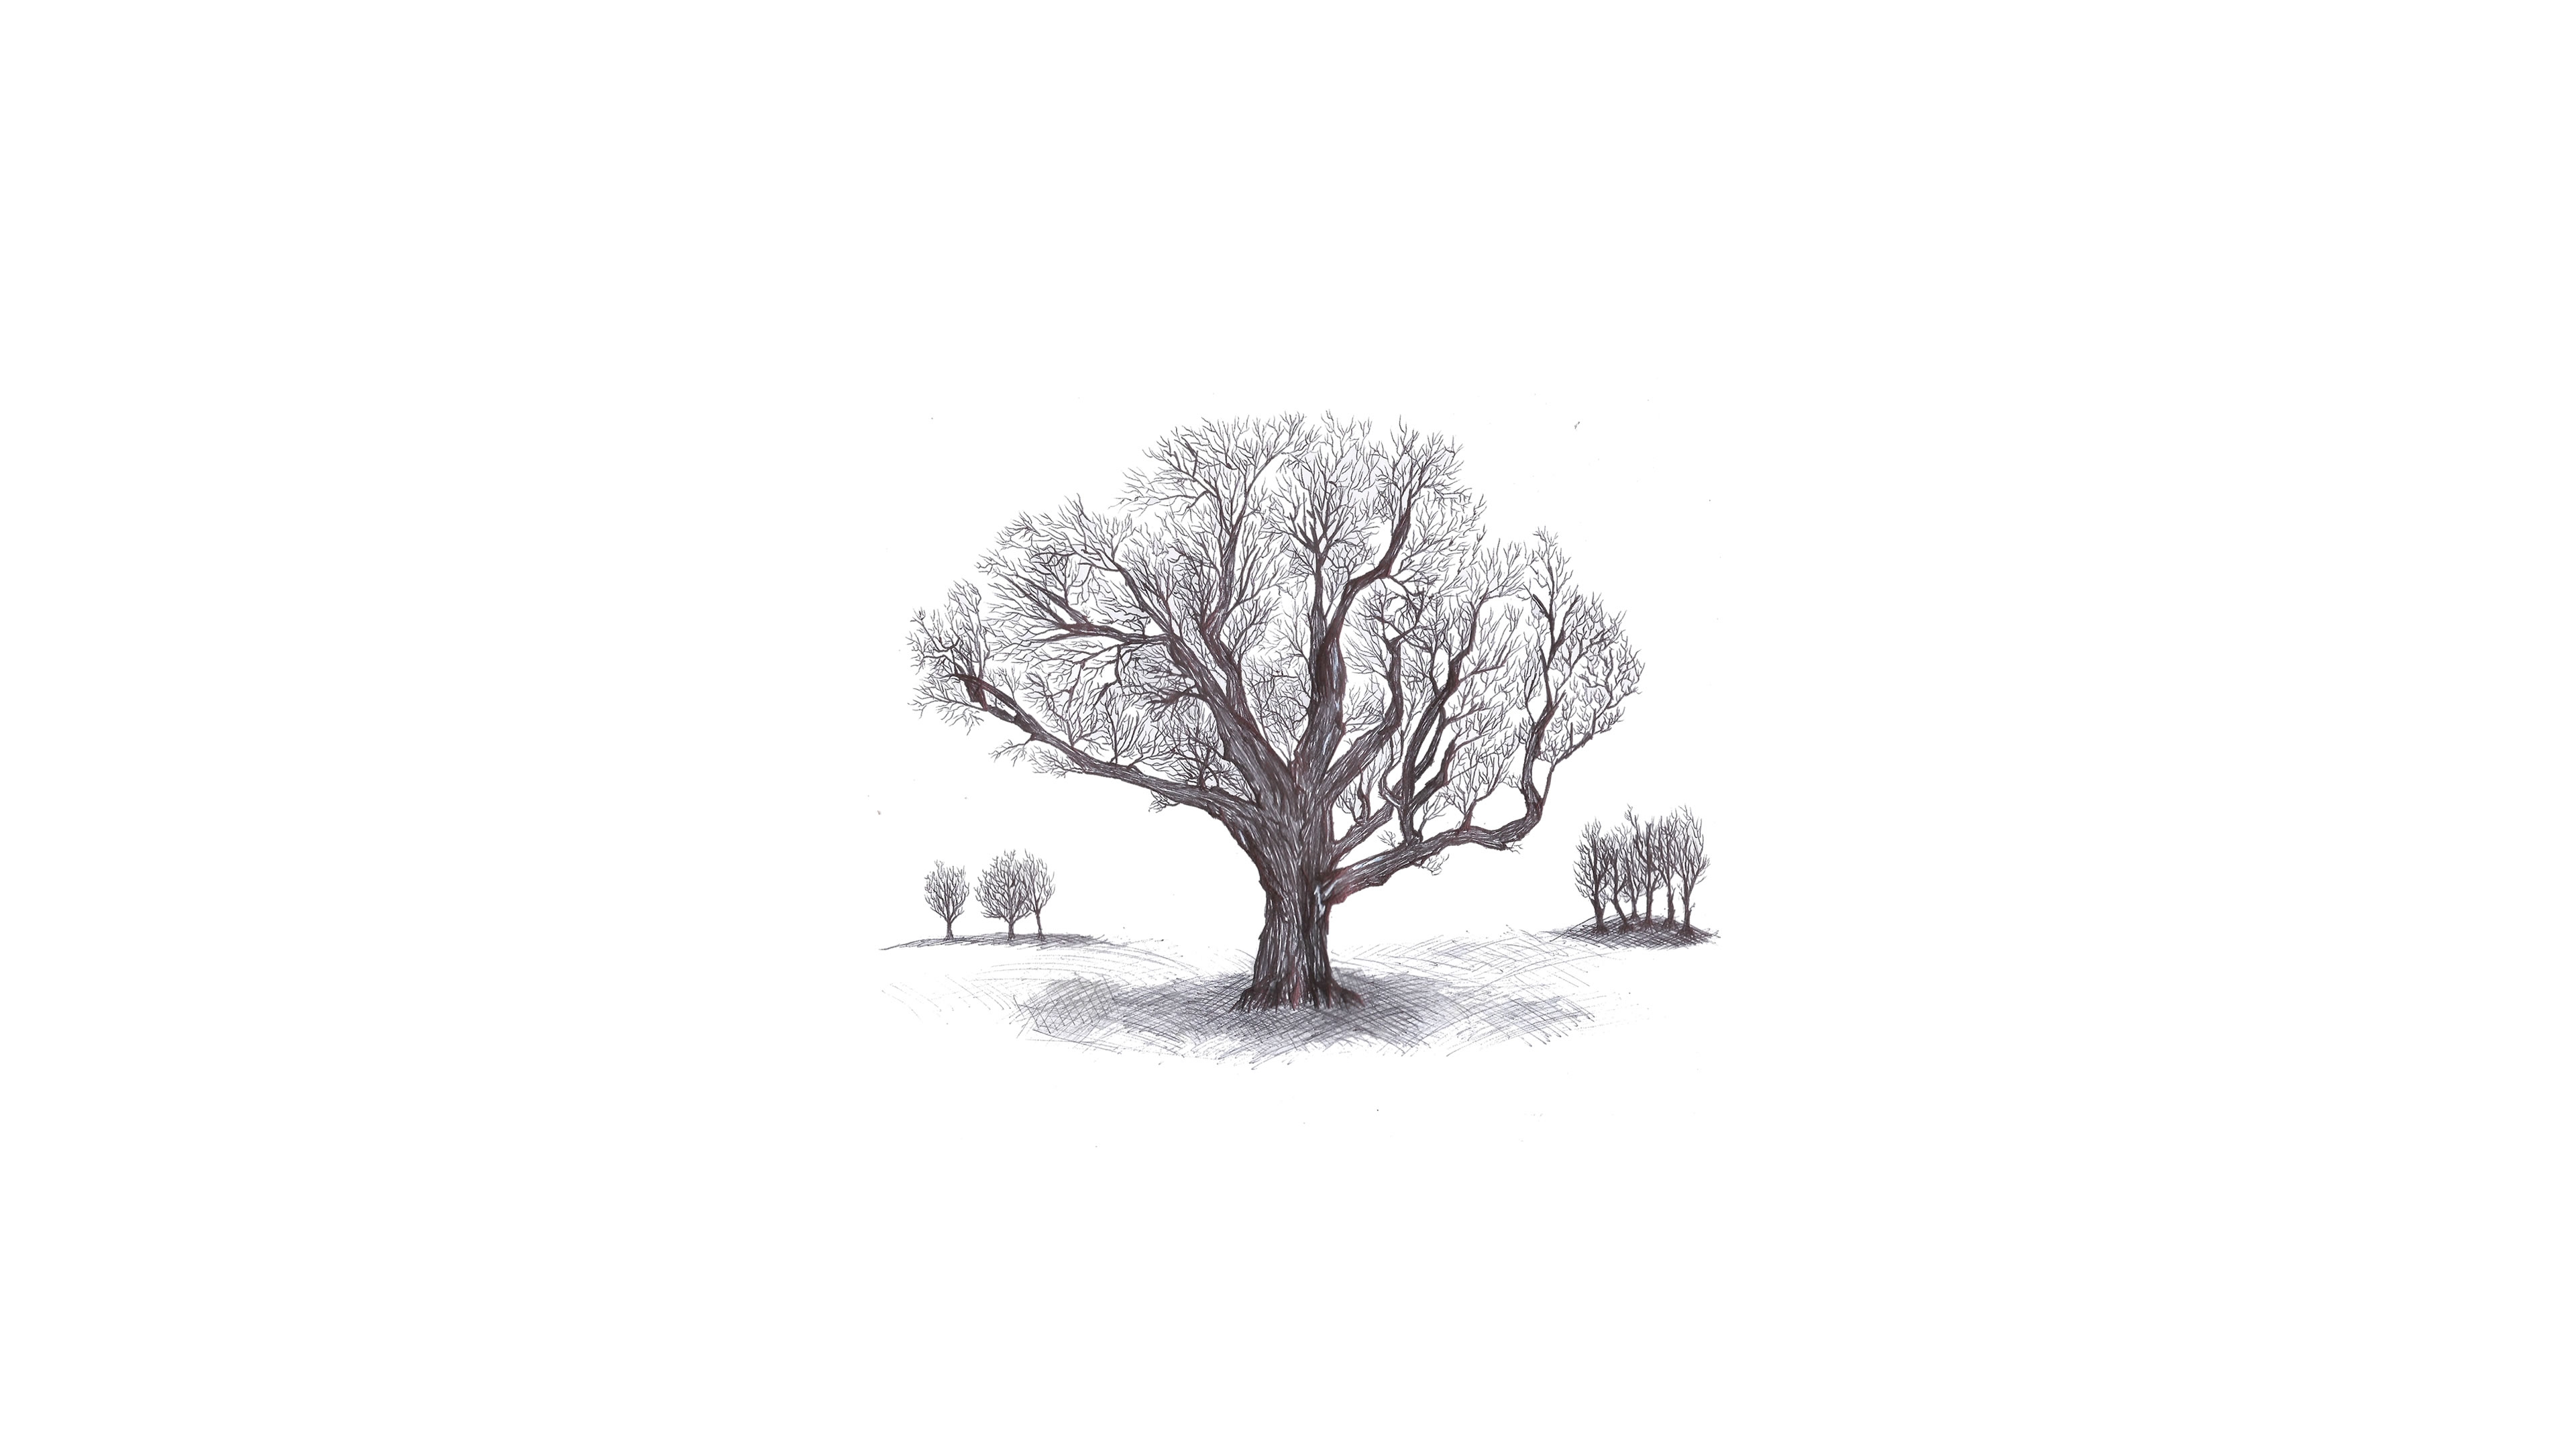 Фото эскиз дерева белый фон рисунок - бесплатные картинки на Fonwall